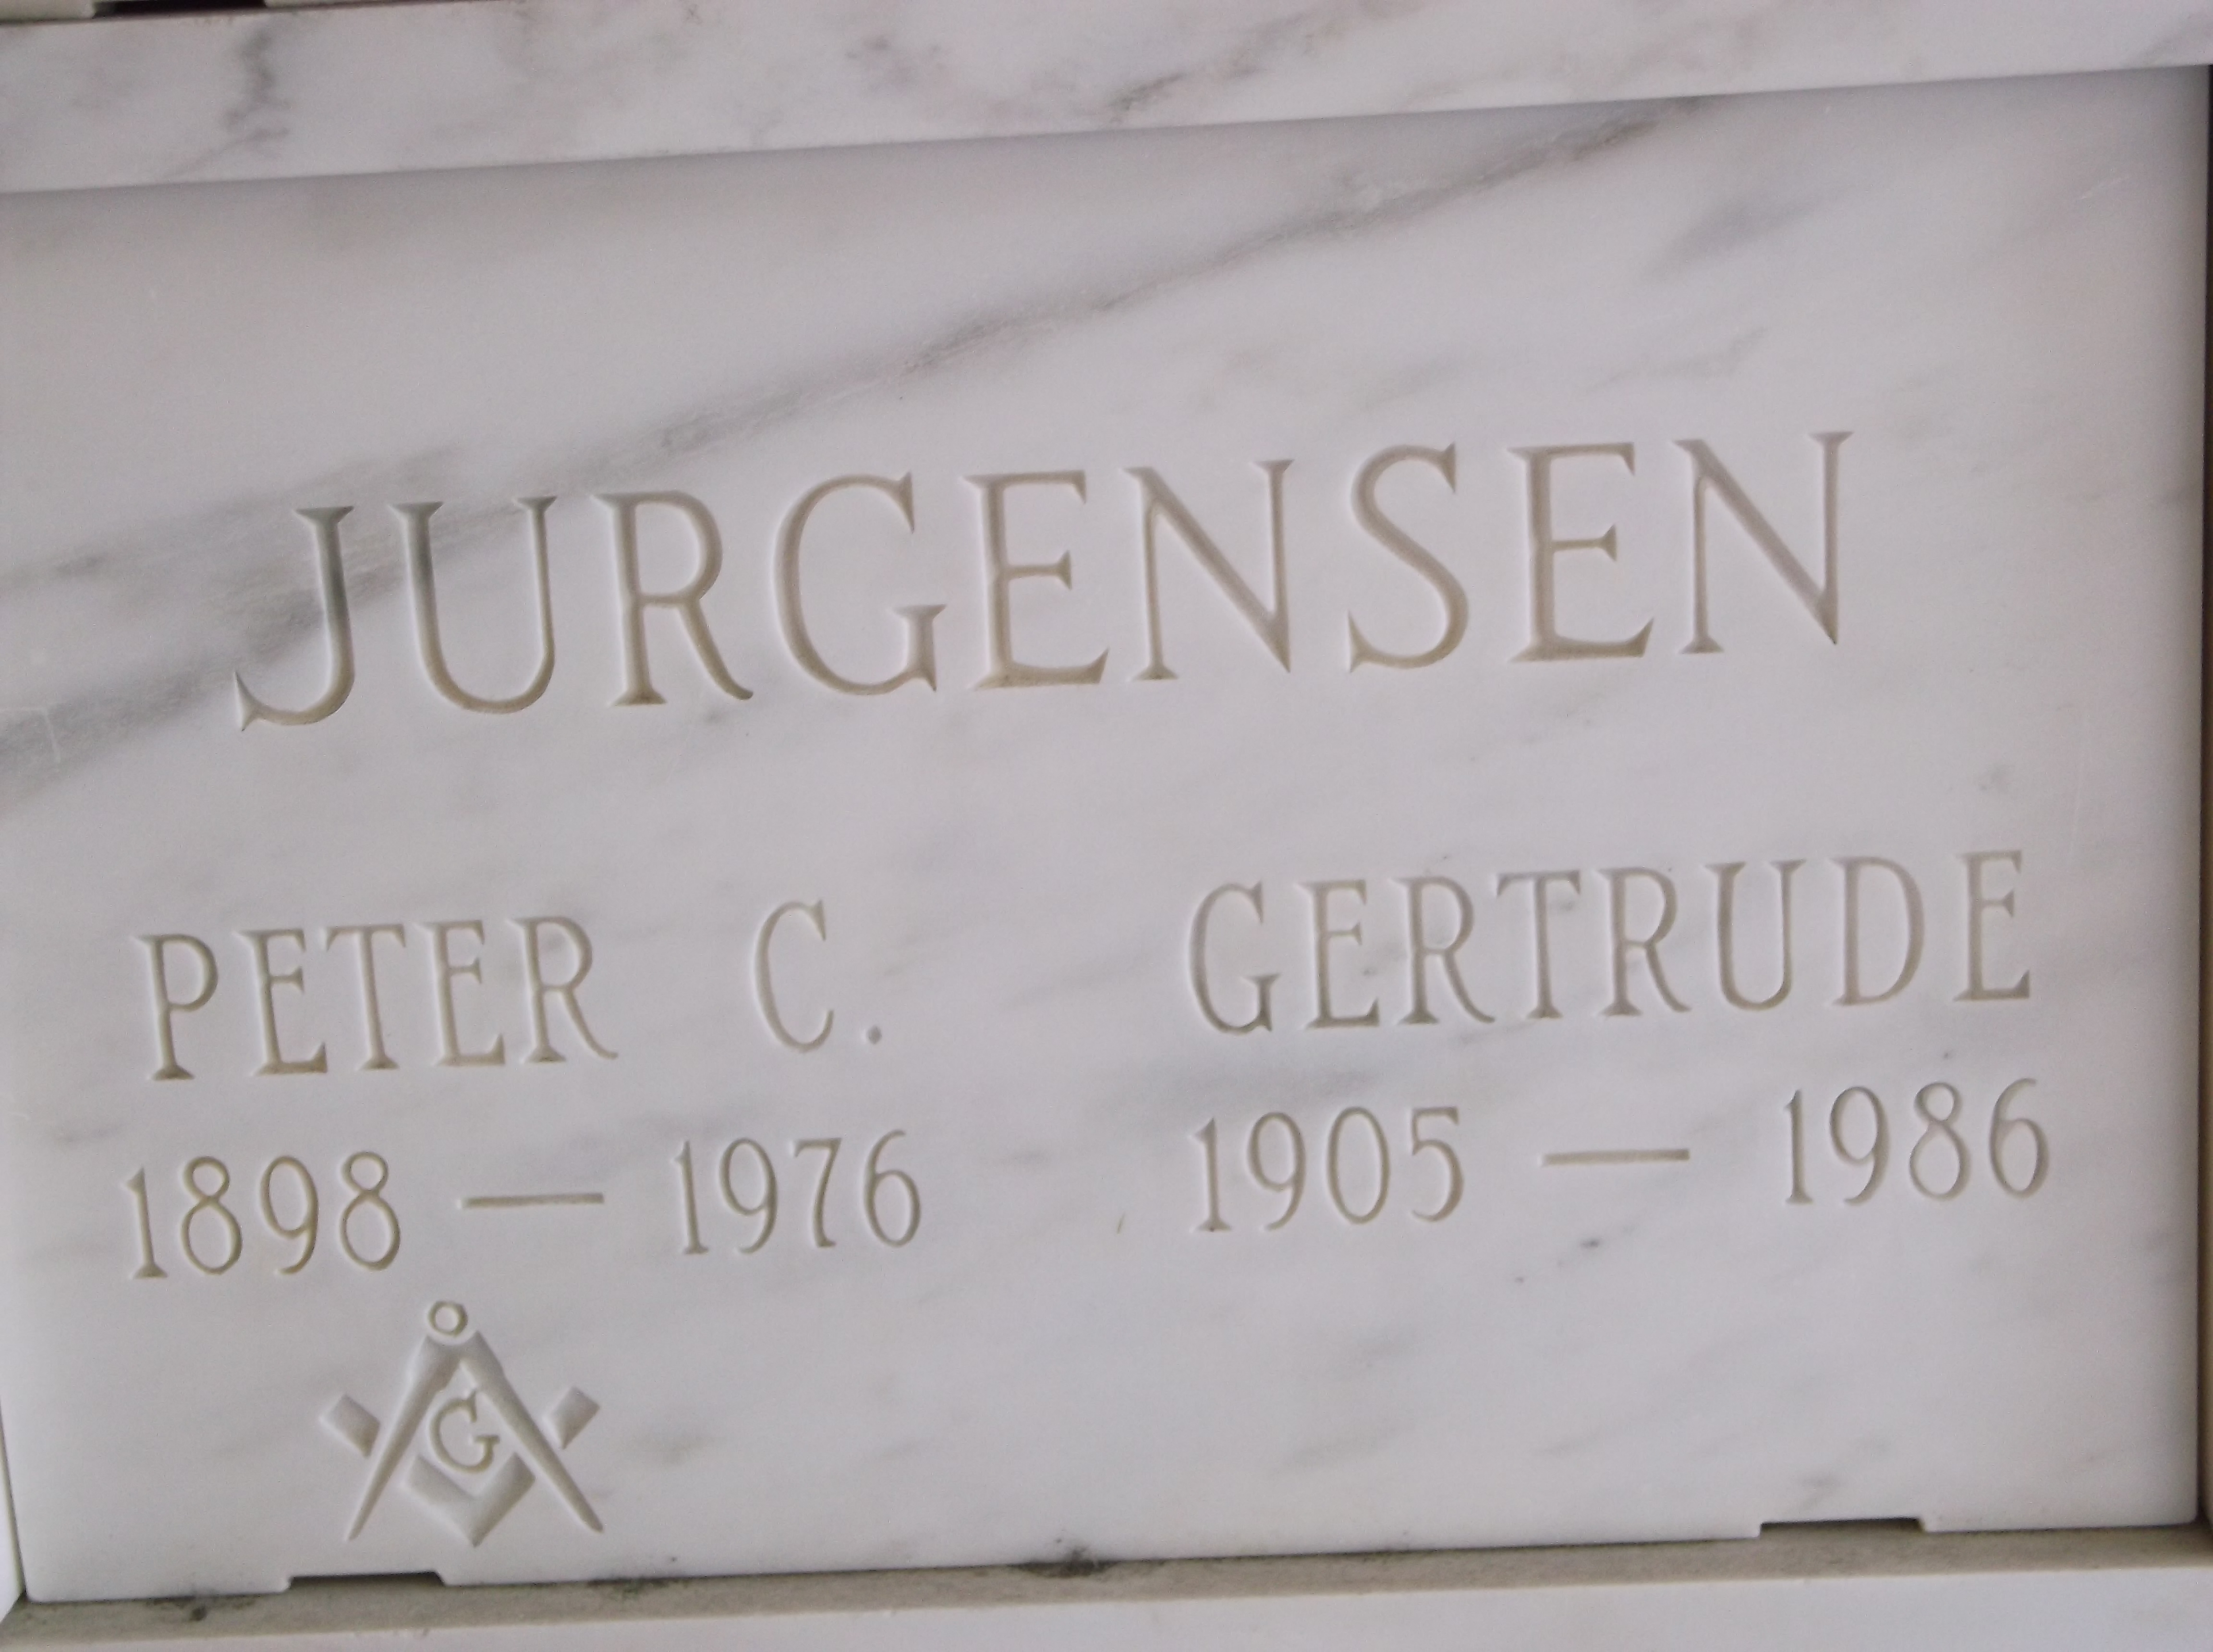 Gertrude Jurgensen